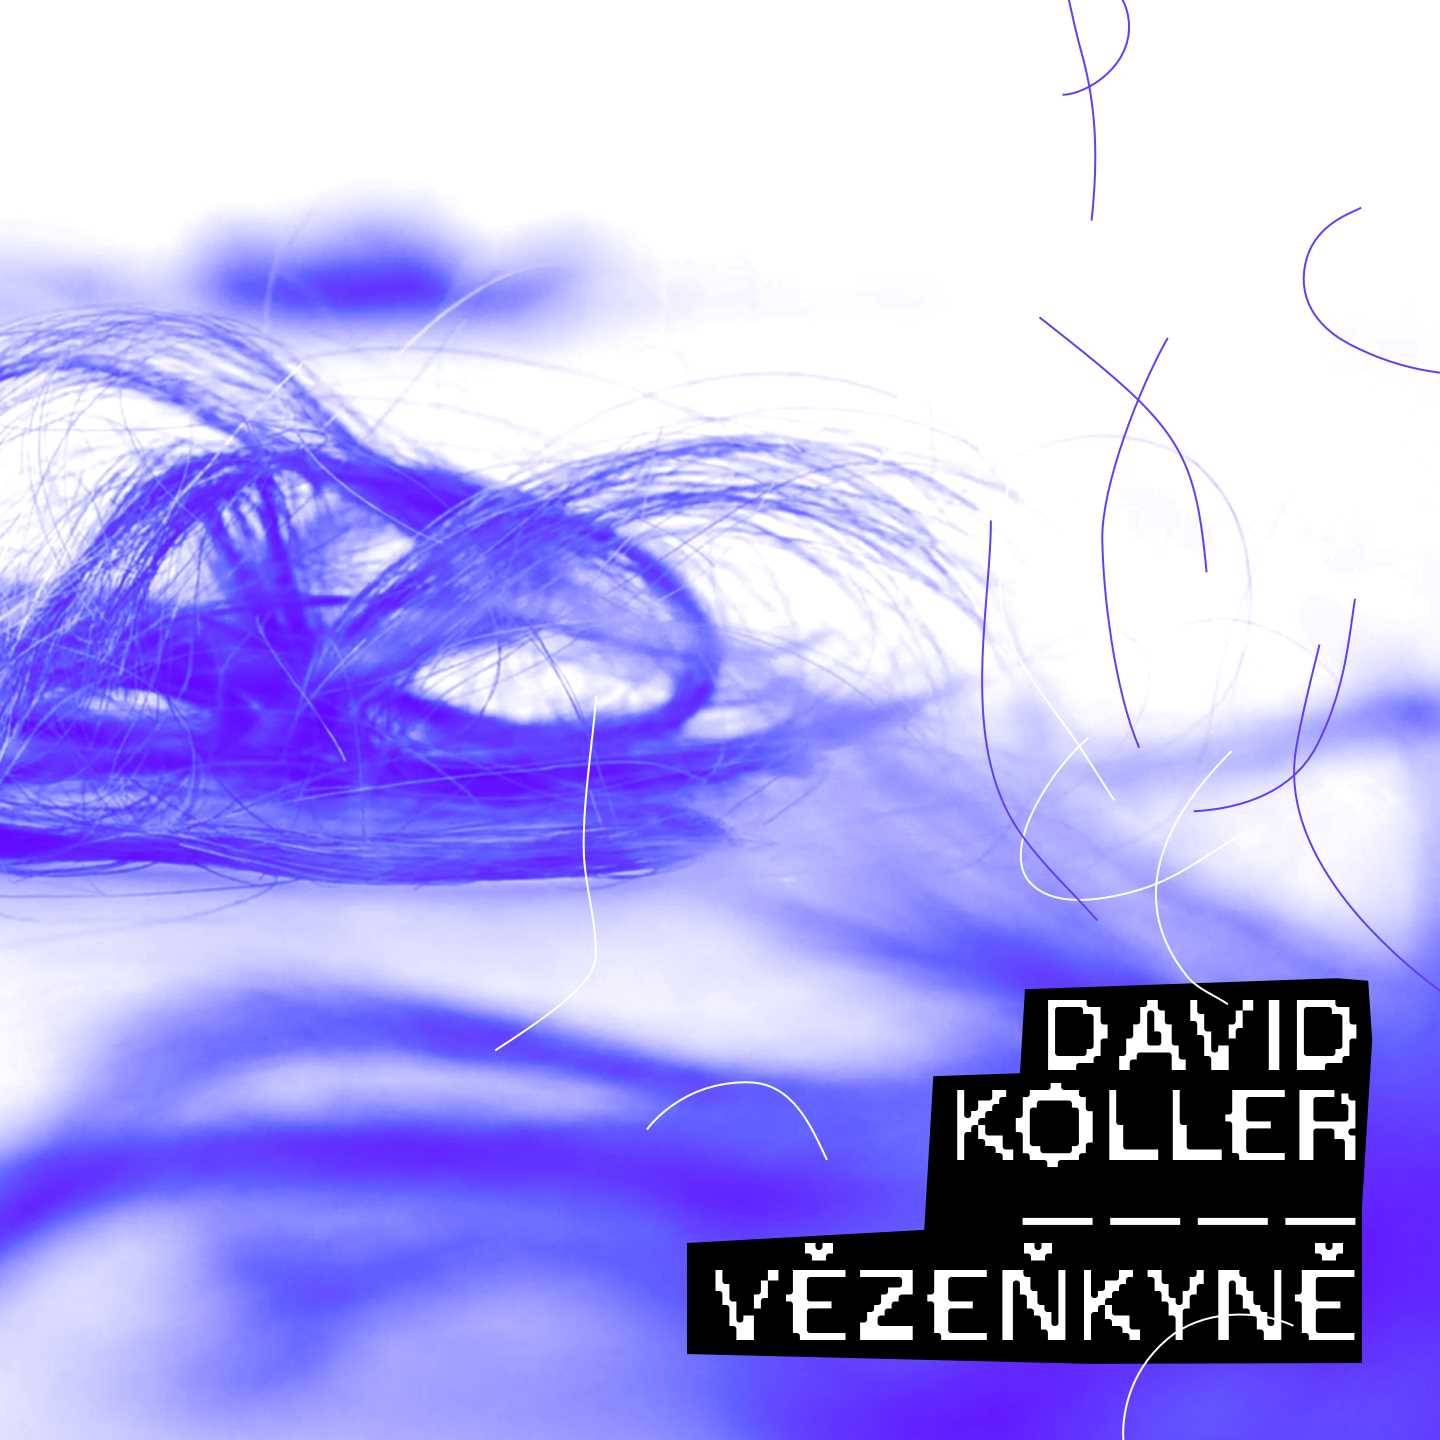 David Koller zpívá v singlu Vězenkyně o domácím násilím, text mu napsal Jáchym Topol